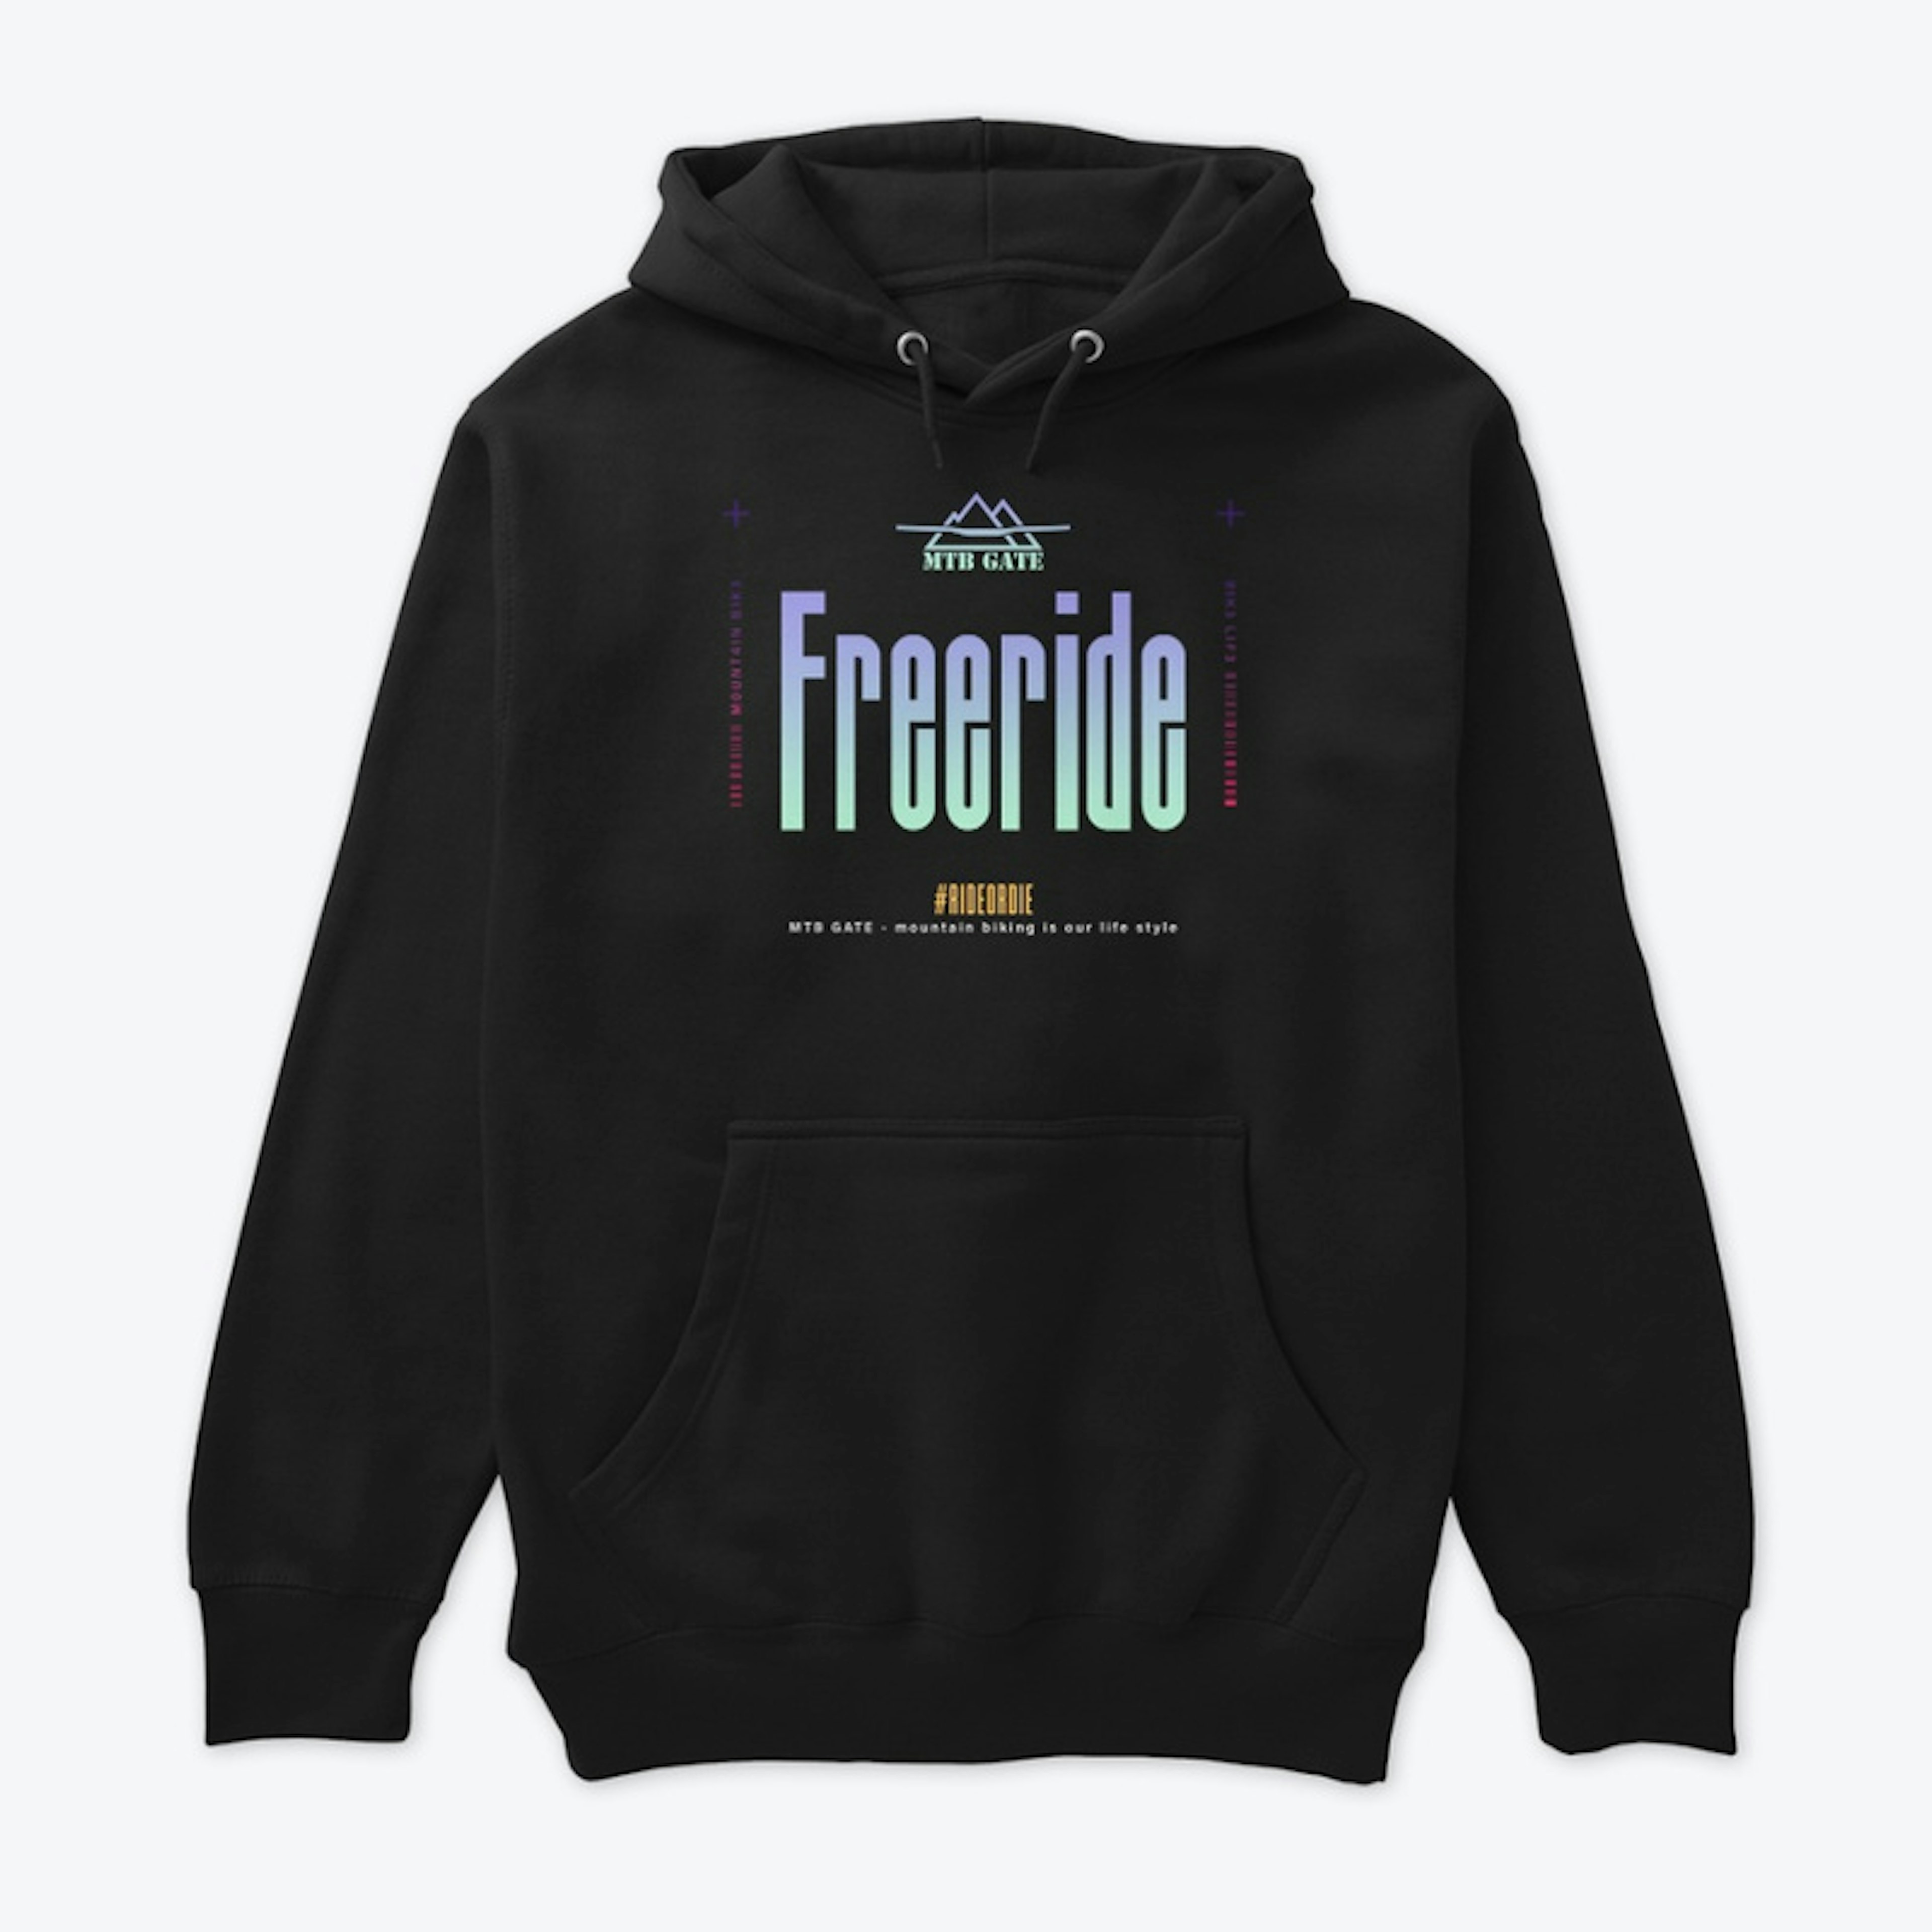 Freeride is you life style